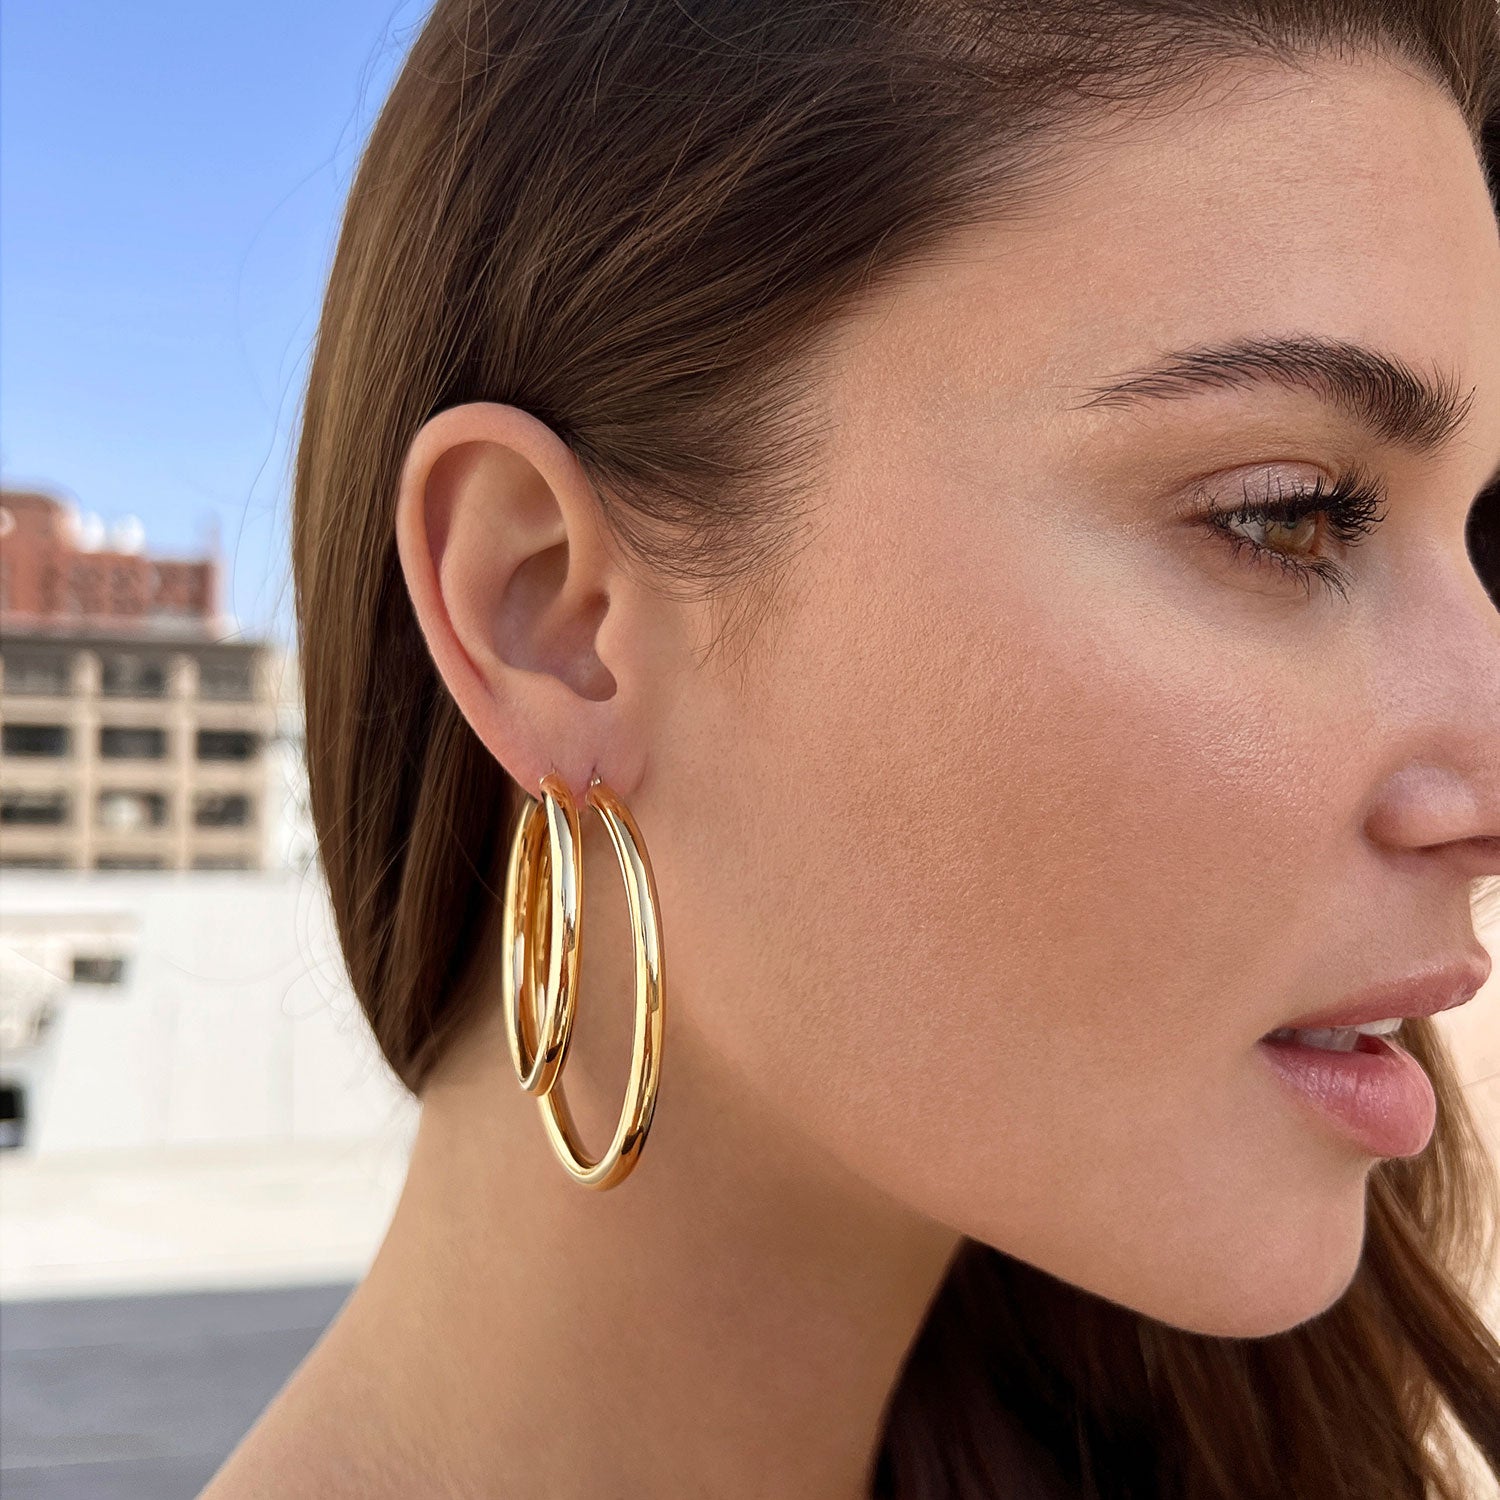 Buy Gold Earrings Online - Gold Earrings Online